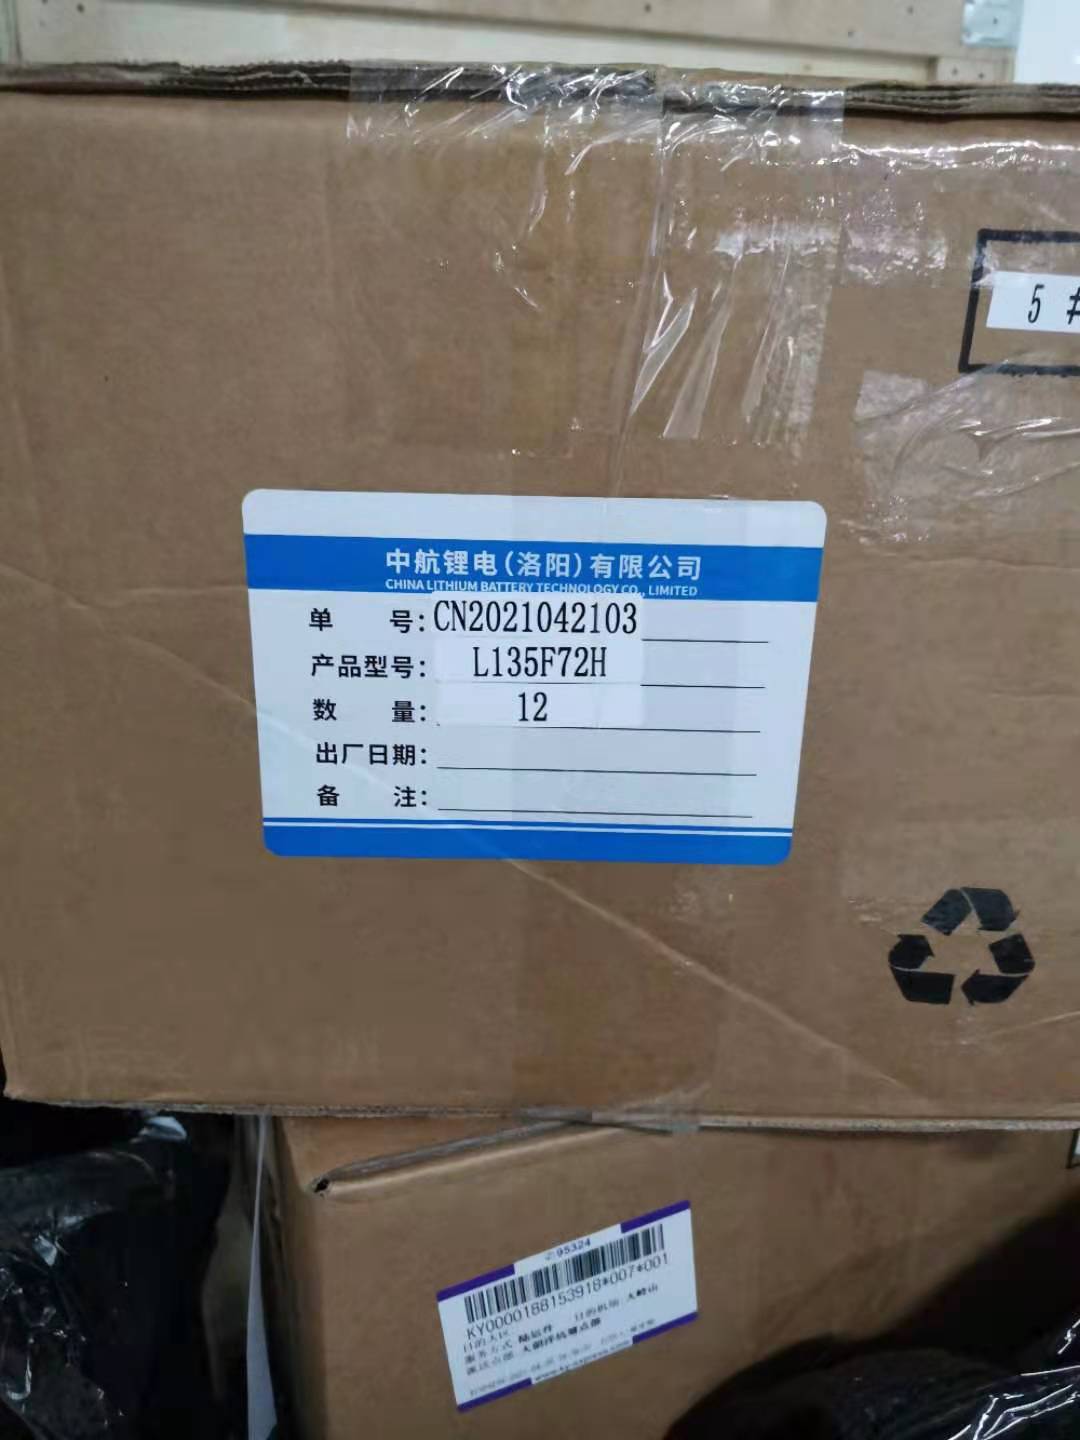 64pcs CALB 3.2V72Ah battery shipped to New Zealand